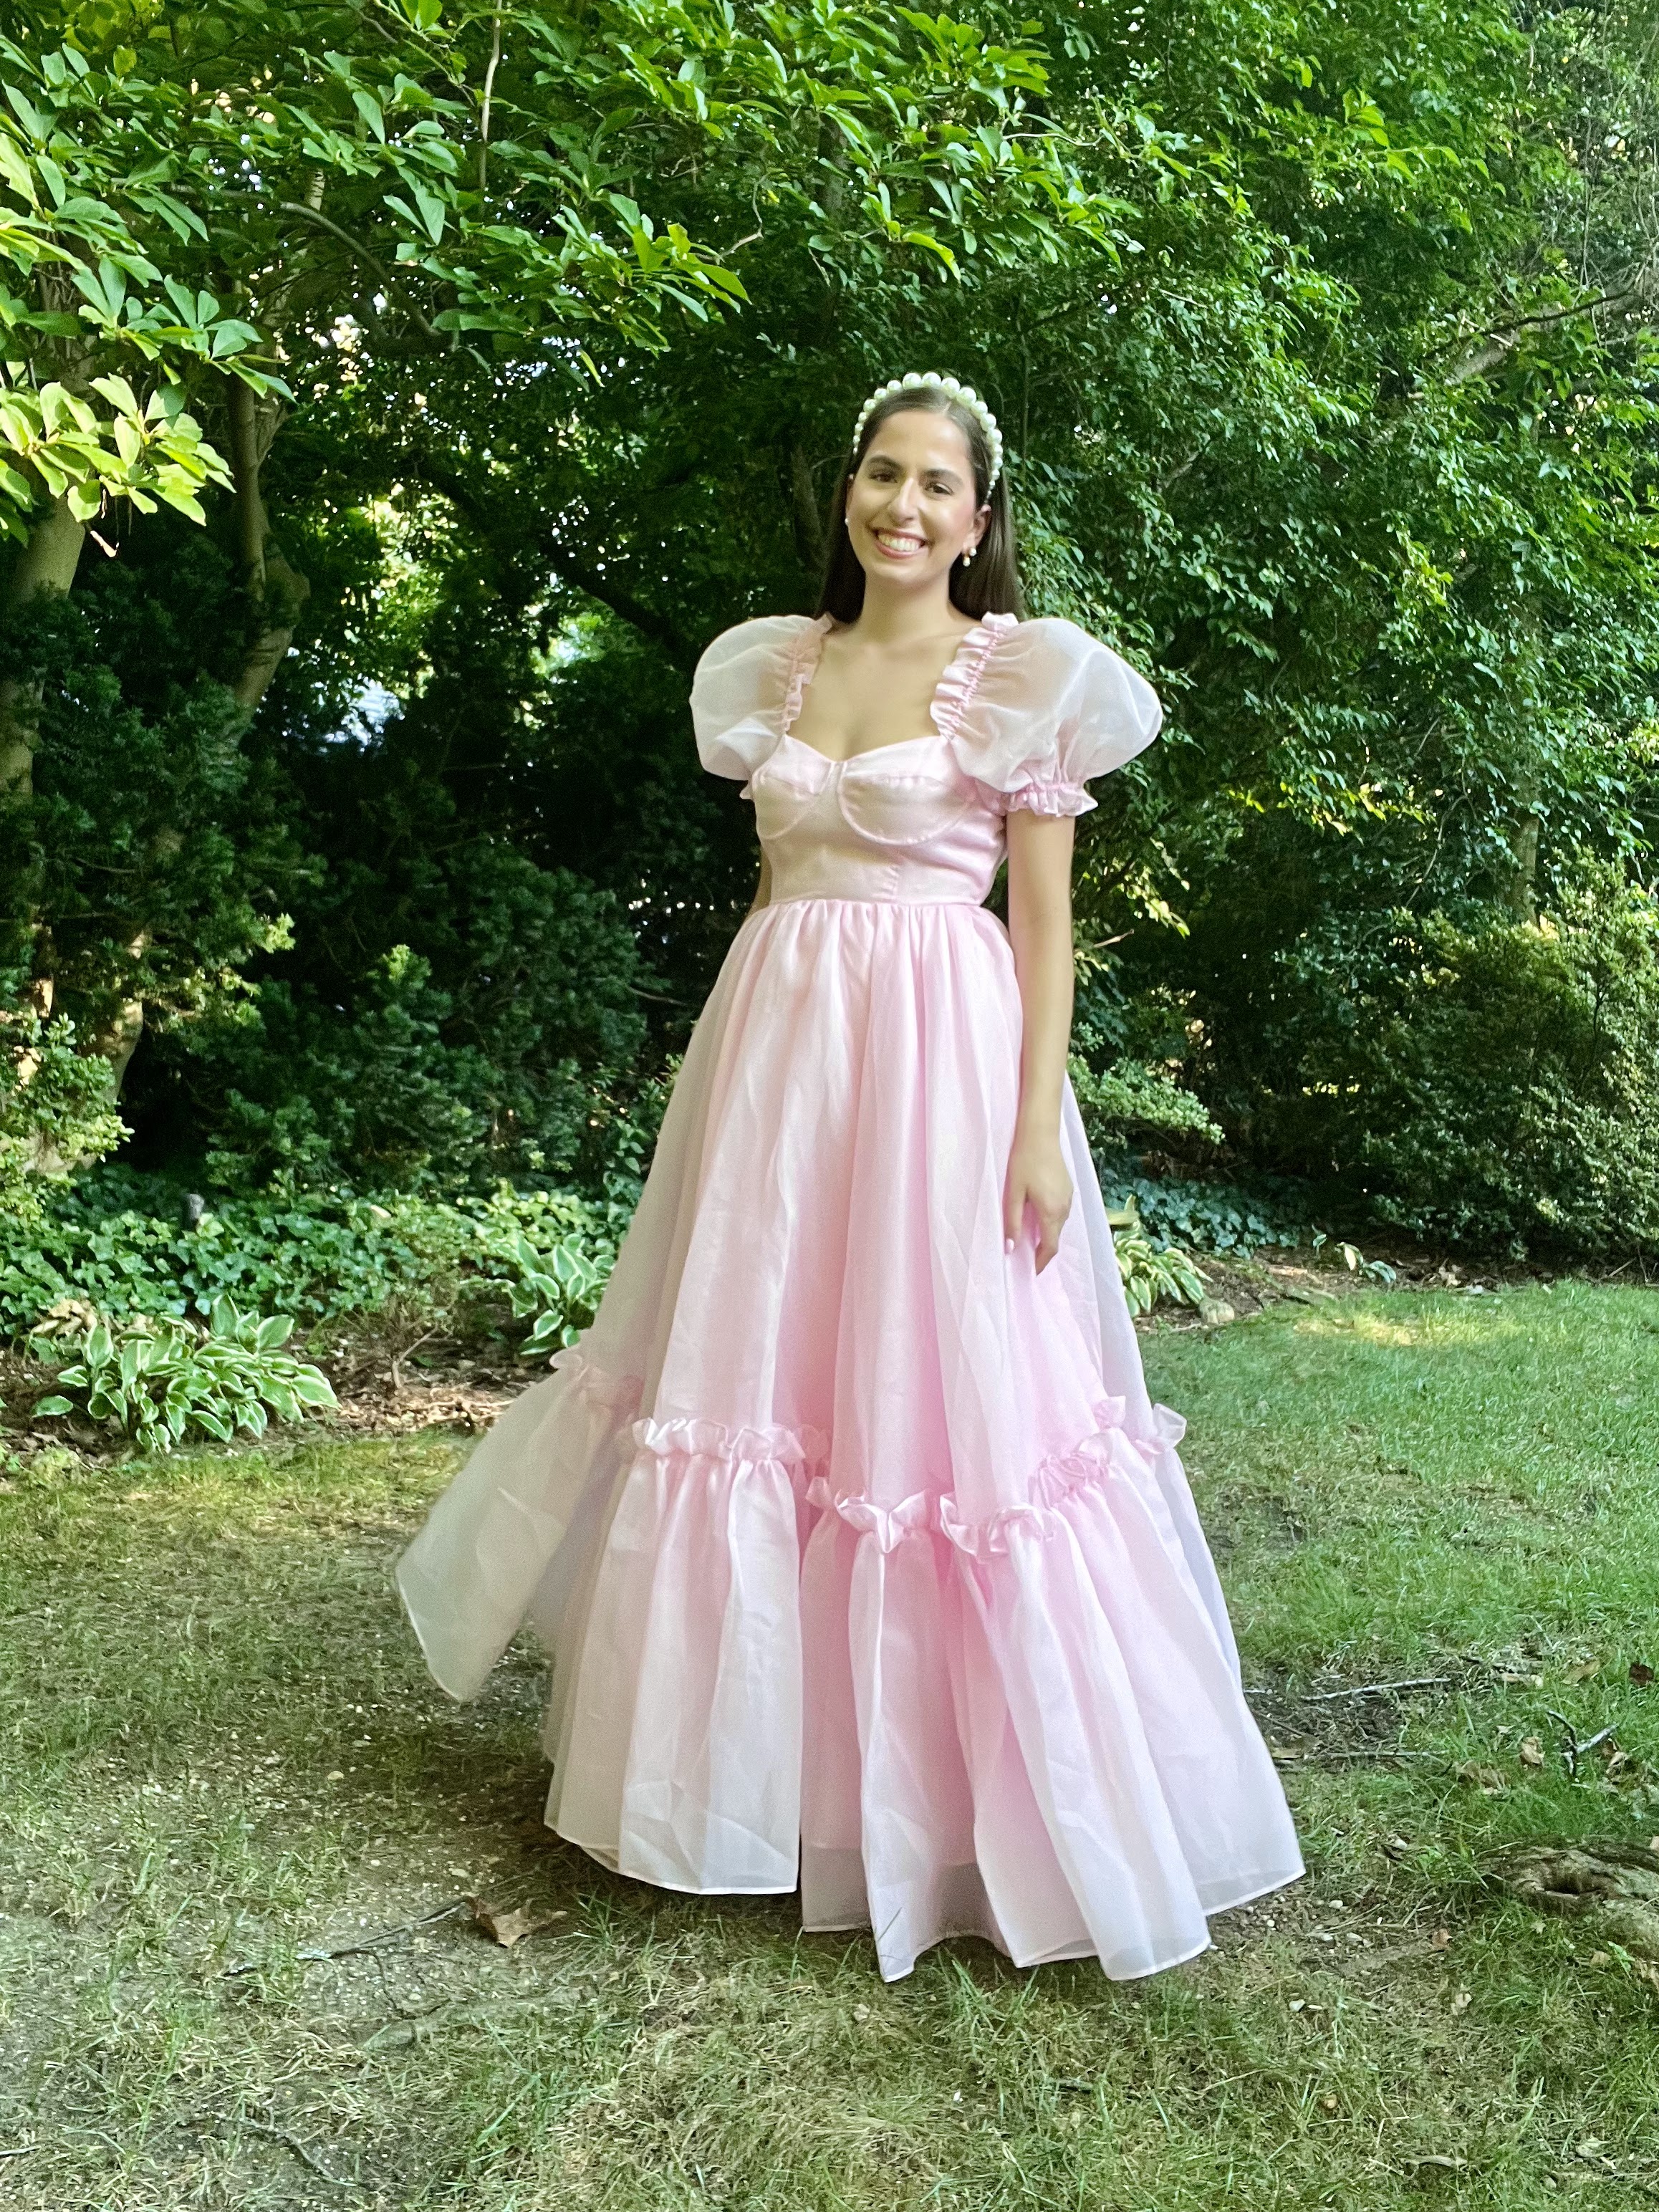 pink selkie princess dress, pink puff sleeve dress, selkie dress, puff sleeve dress, pink gown, prom dress, wedding guest dress